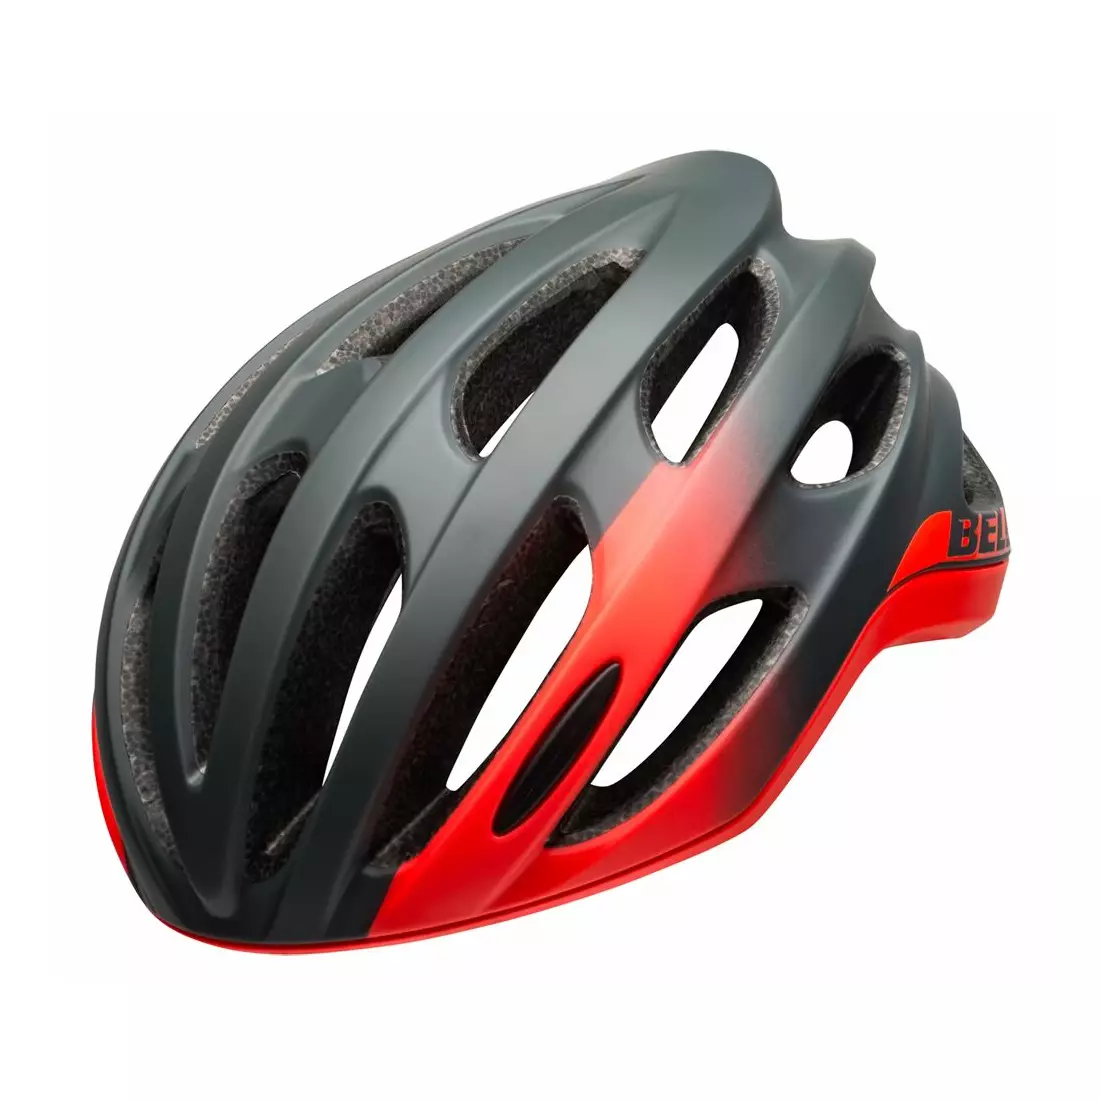 BELL FORMULA road bike helmet, matte gloss gray infrared